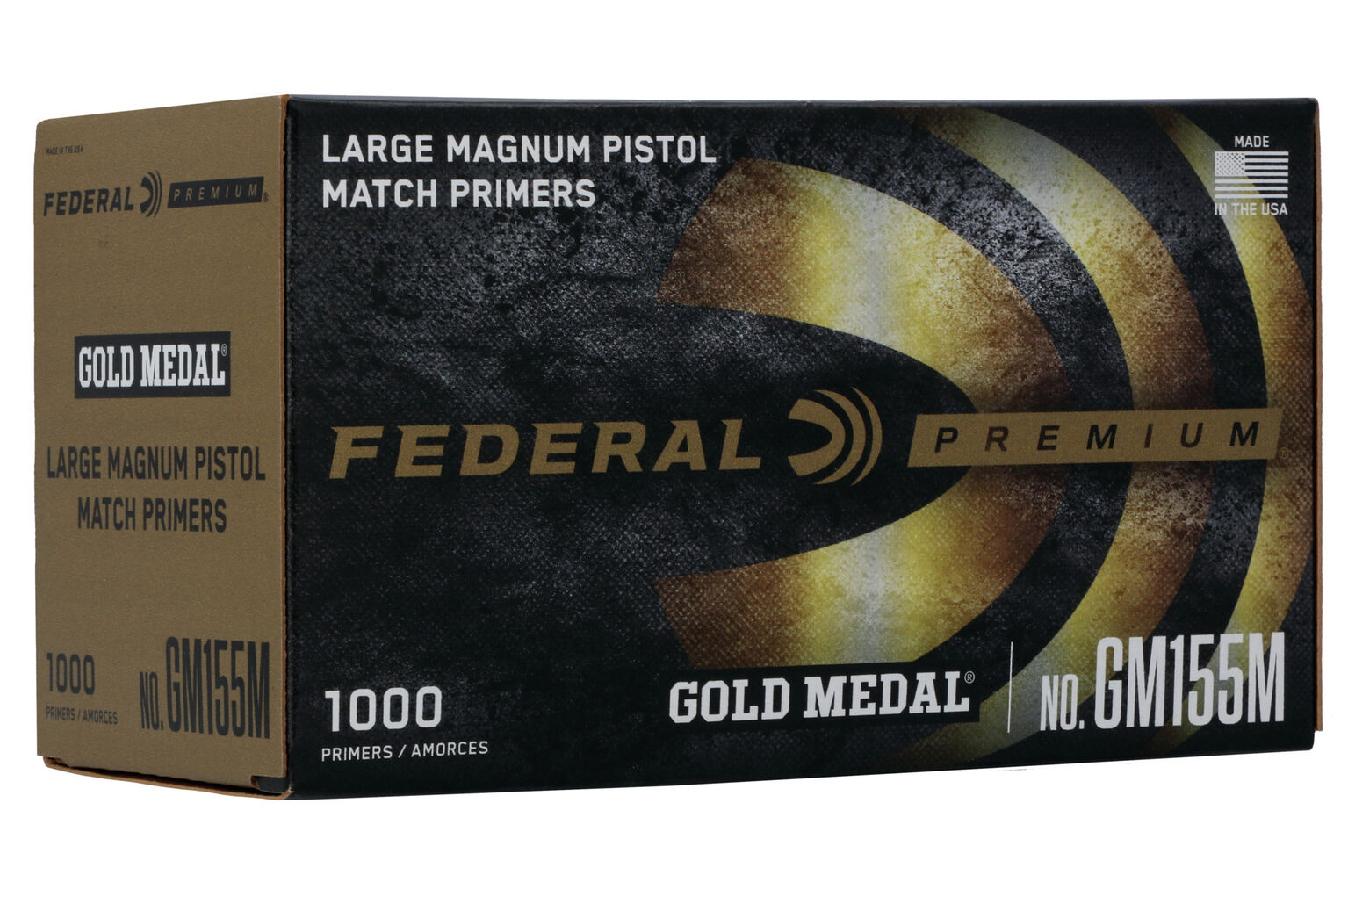 LARGE MAGNUM PISTOL MATCH PRIMERS (GOLD MEDAL) 1000/BOX